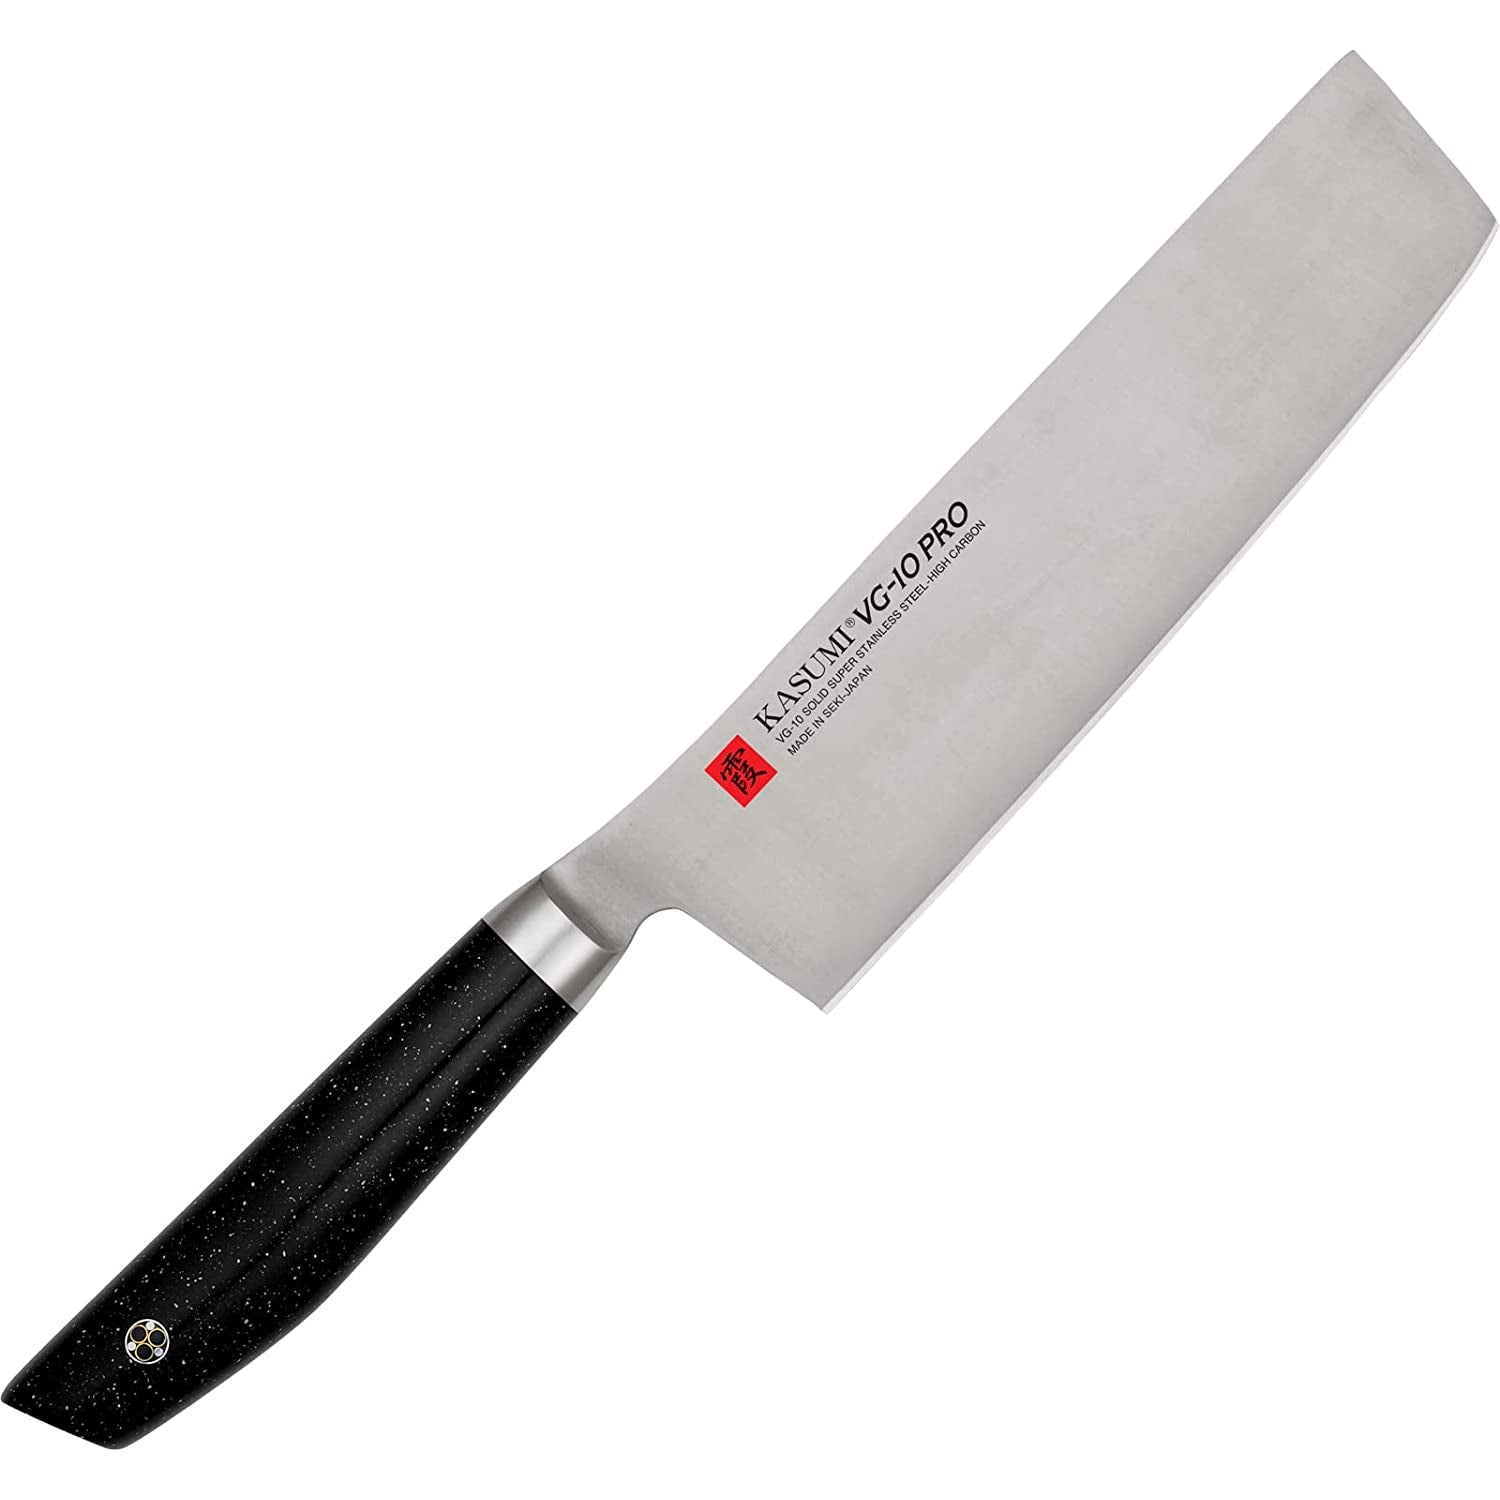 Sumikama Kasumi VG10 Pro Nakiri Vegetable Knife 17cm 54017